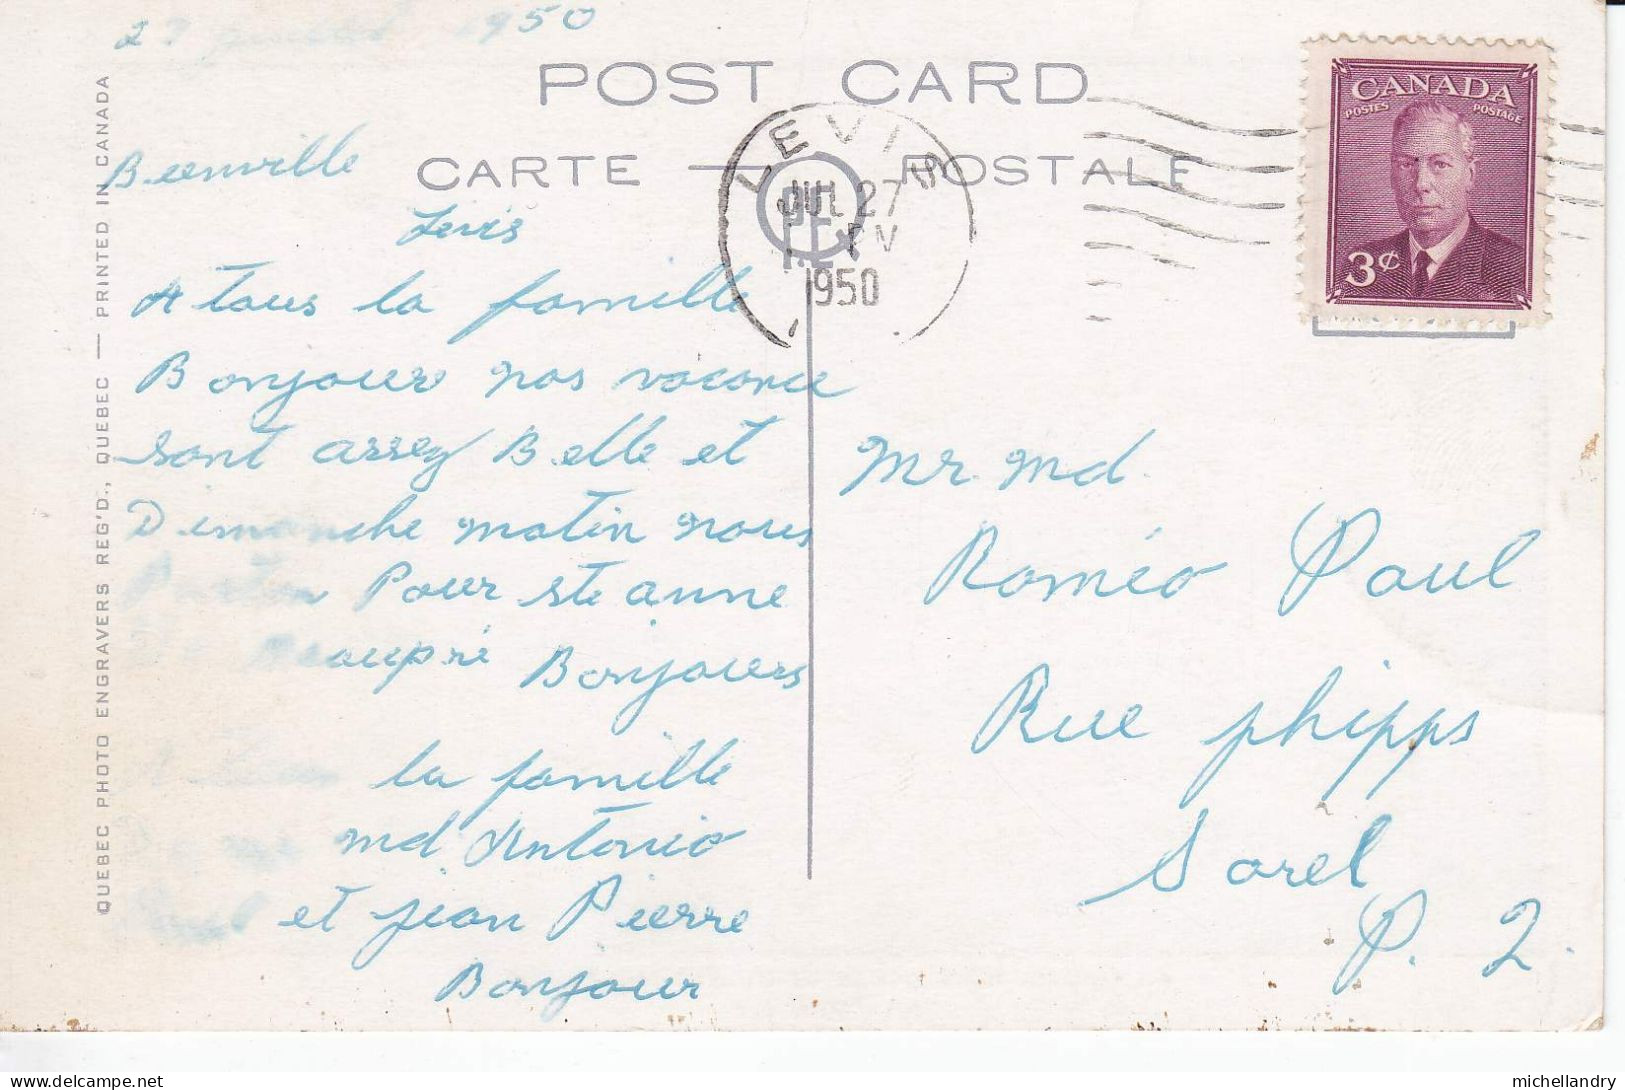 Carte Postal (123251) Hotel Kent House Et Chutes Montmorency Jul 27 1950 Timbre 3c CDN Avec écriture - Cataratas De Montmorency